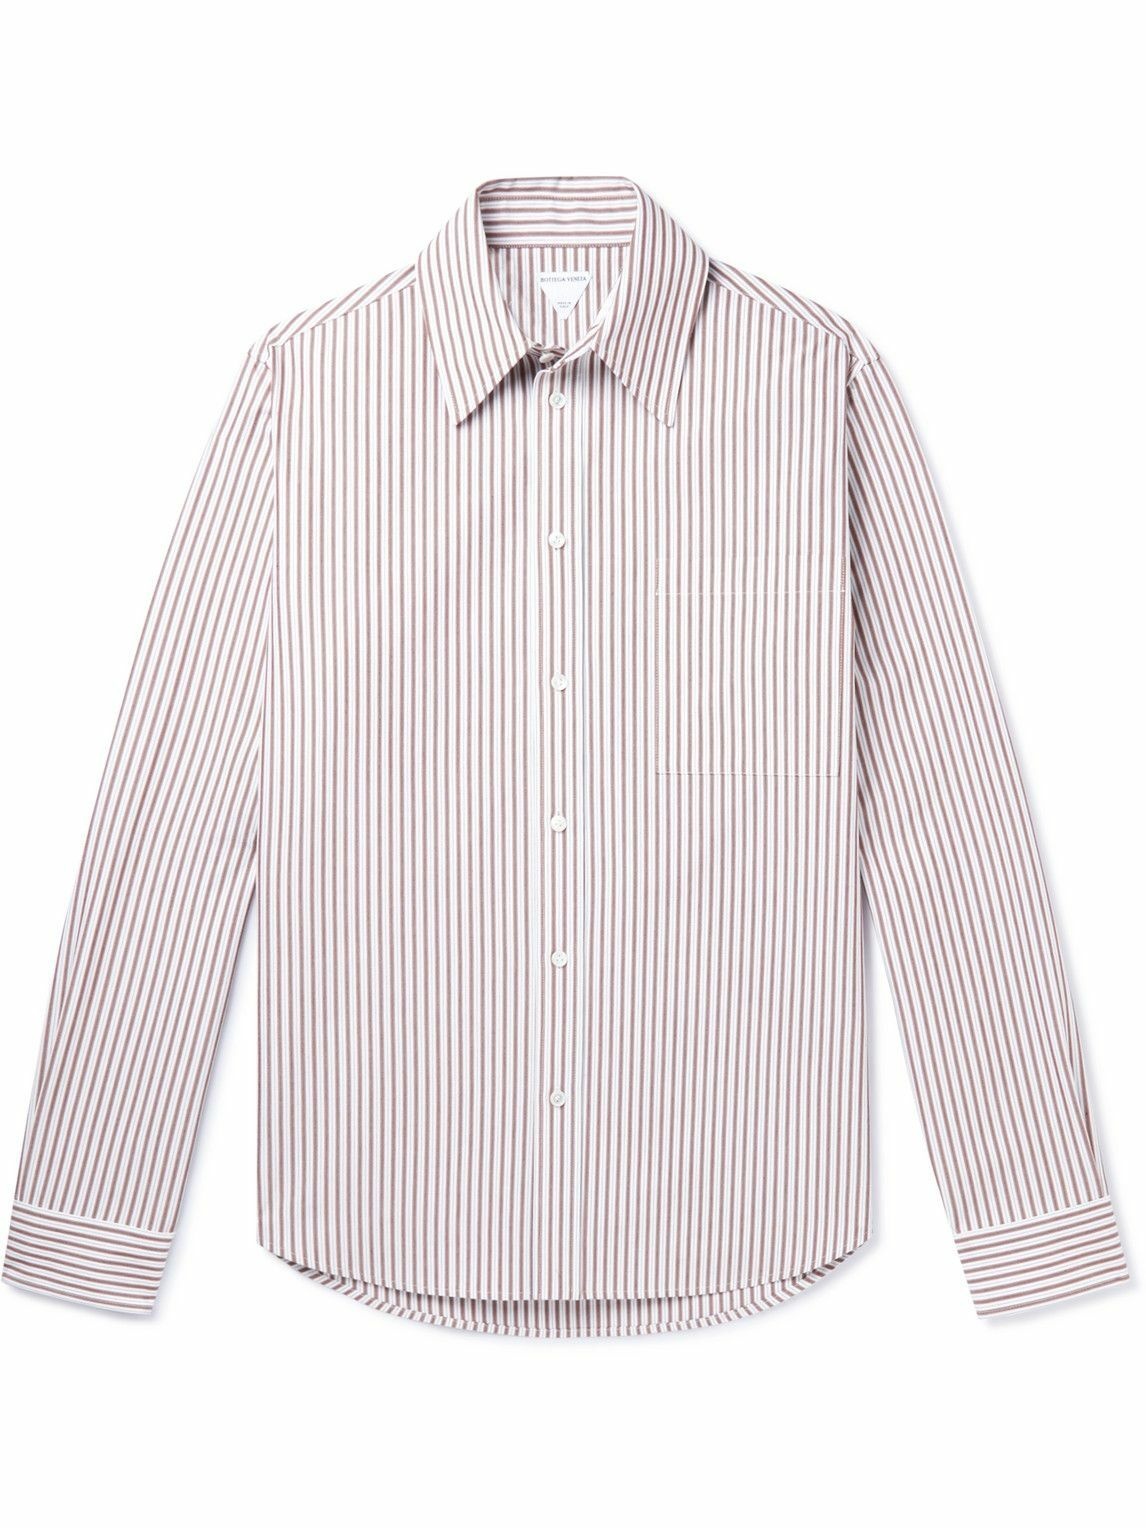 Bottega Veneta - Striped Cotton Shirt - Brown Bottega Veneta